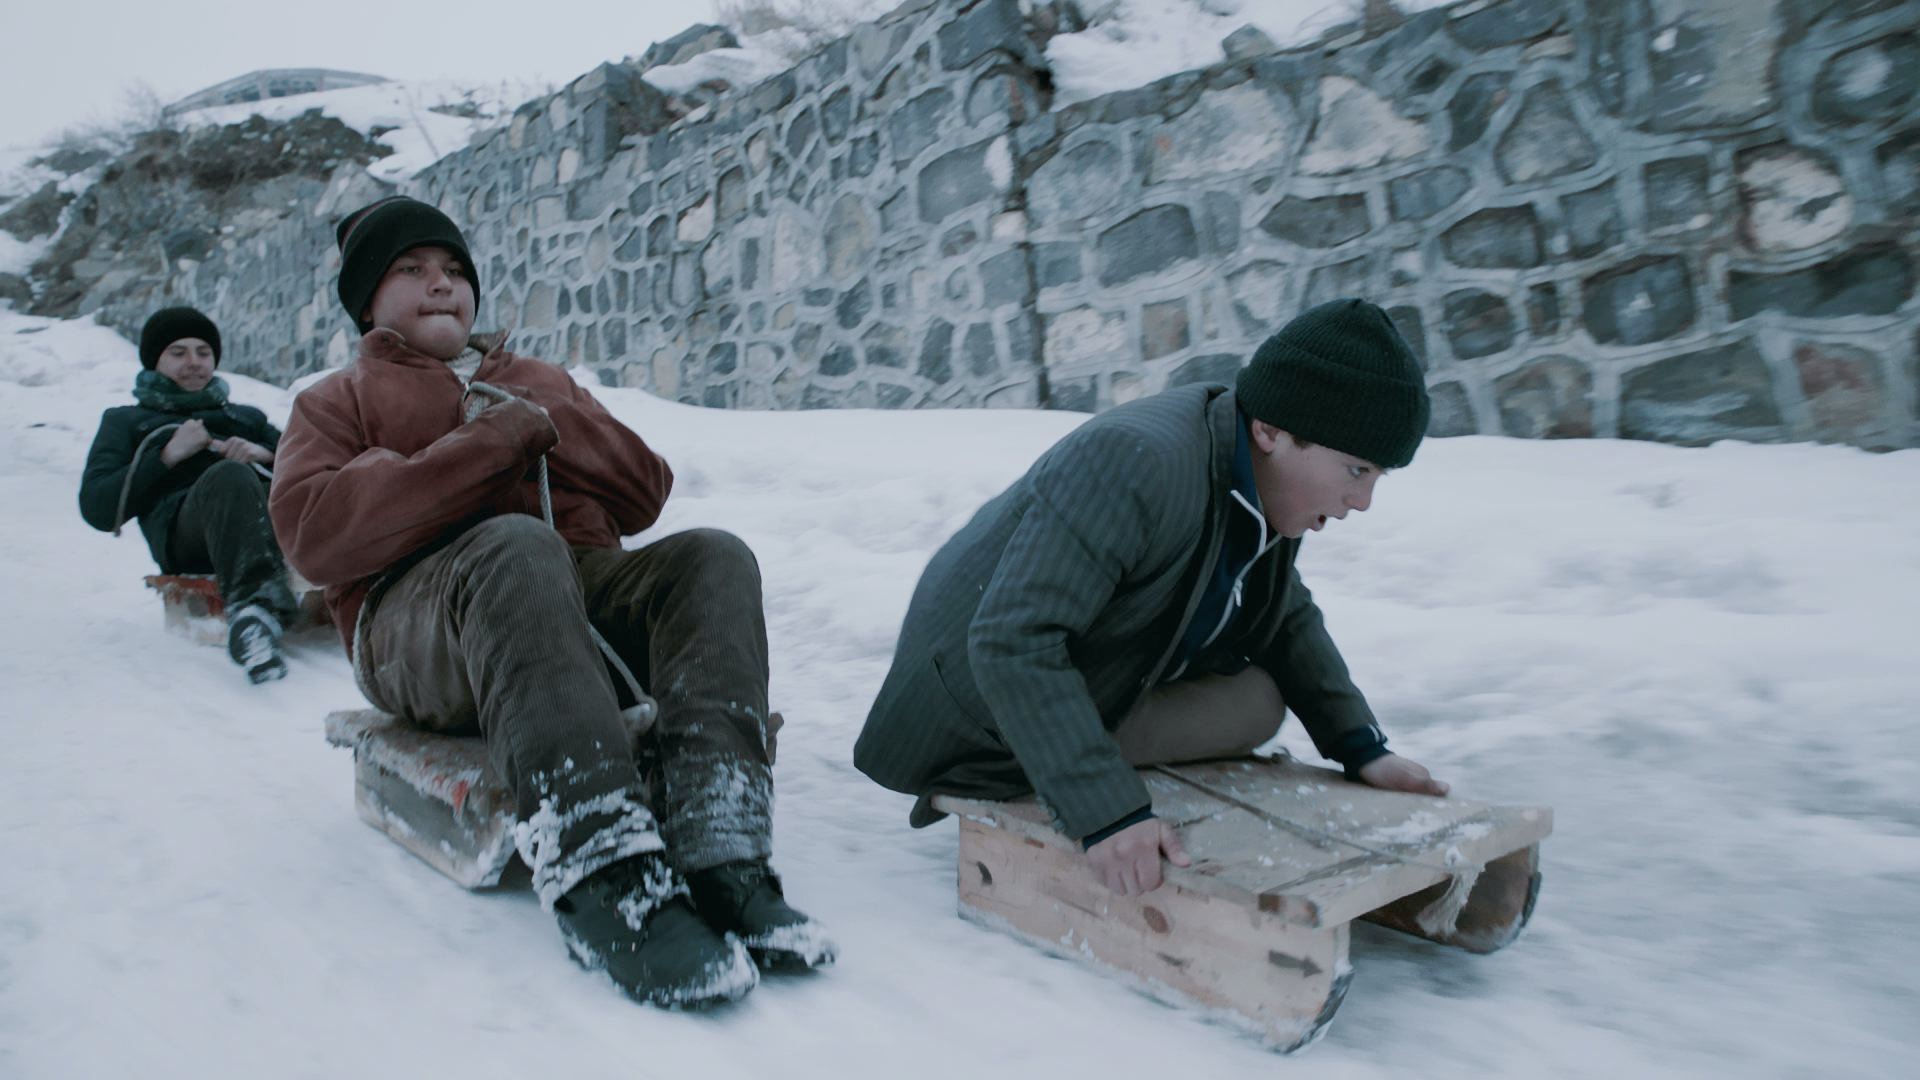 Klax Grundschule Berlinale Schulprojekt 2015 Ein Projekt zum Film " Schneepiraten " Türkei 2015 von Faruk Hacihafizoglu